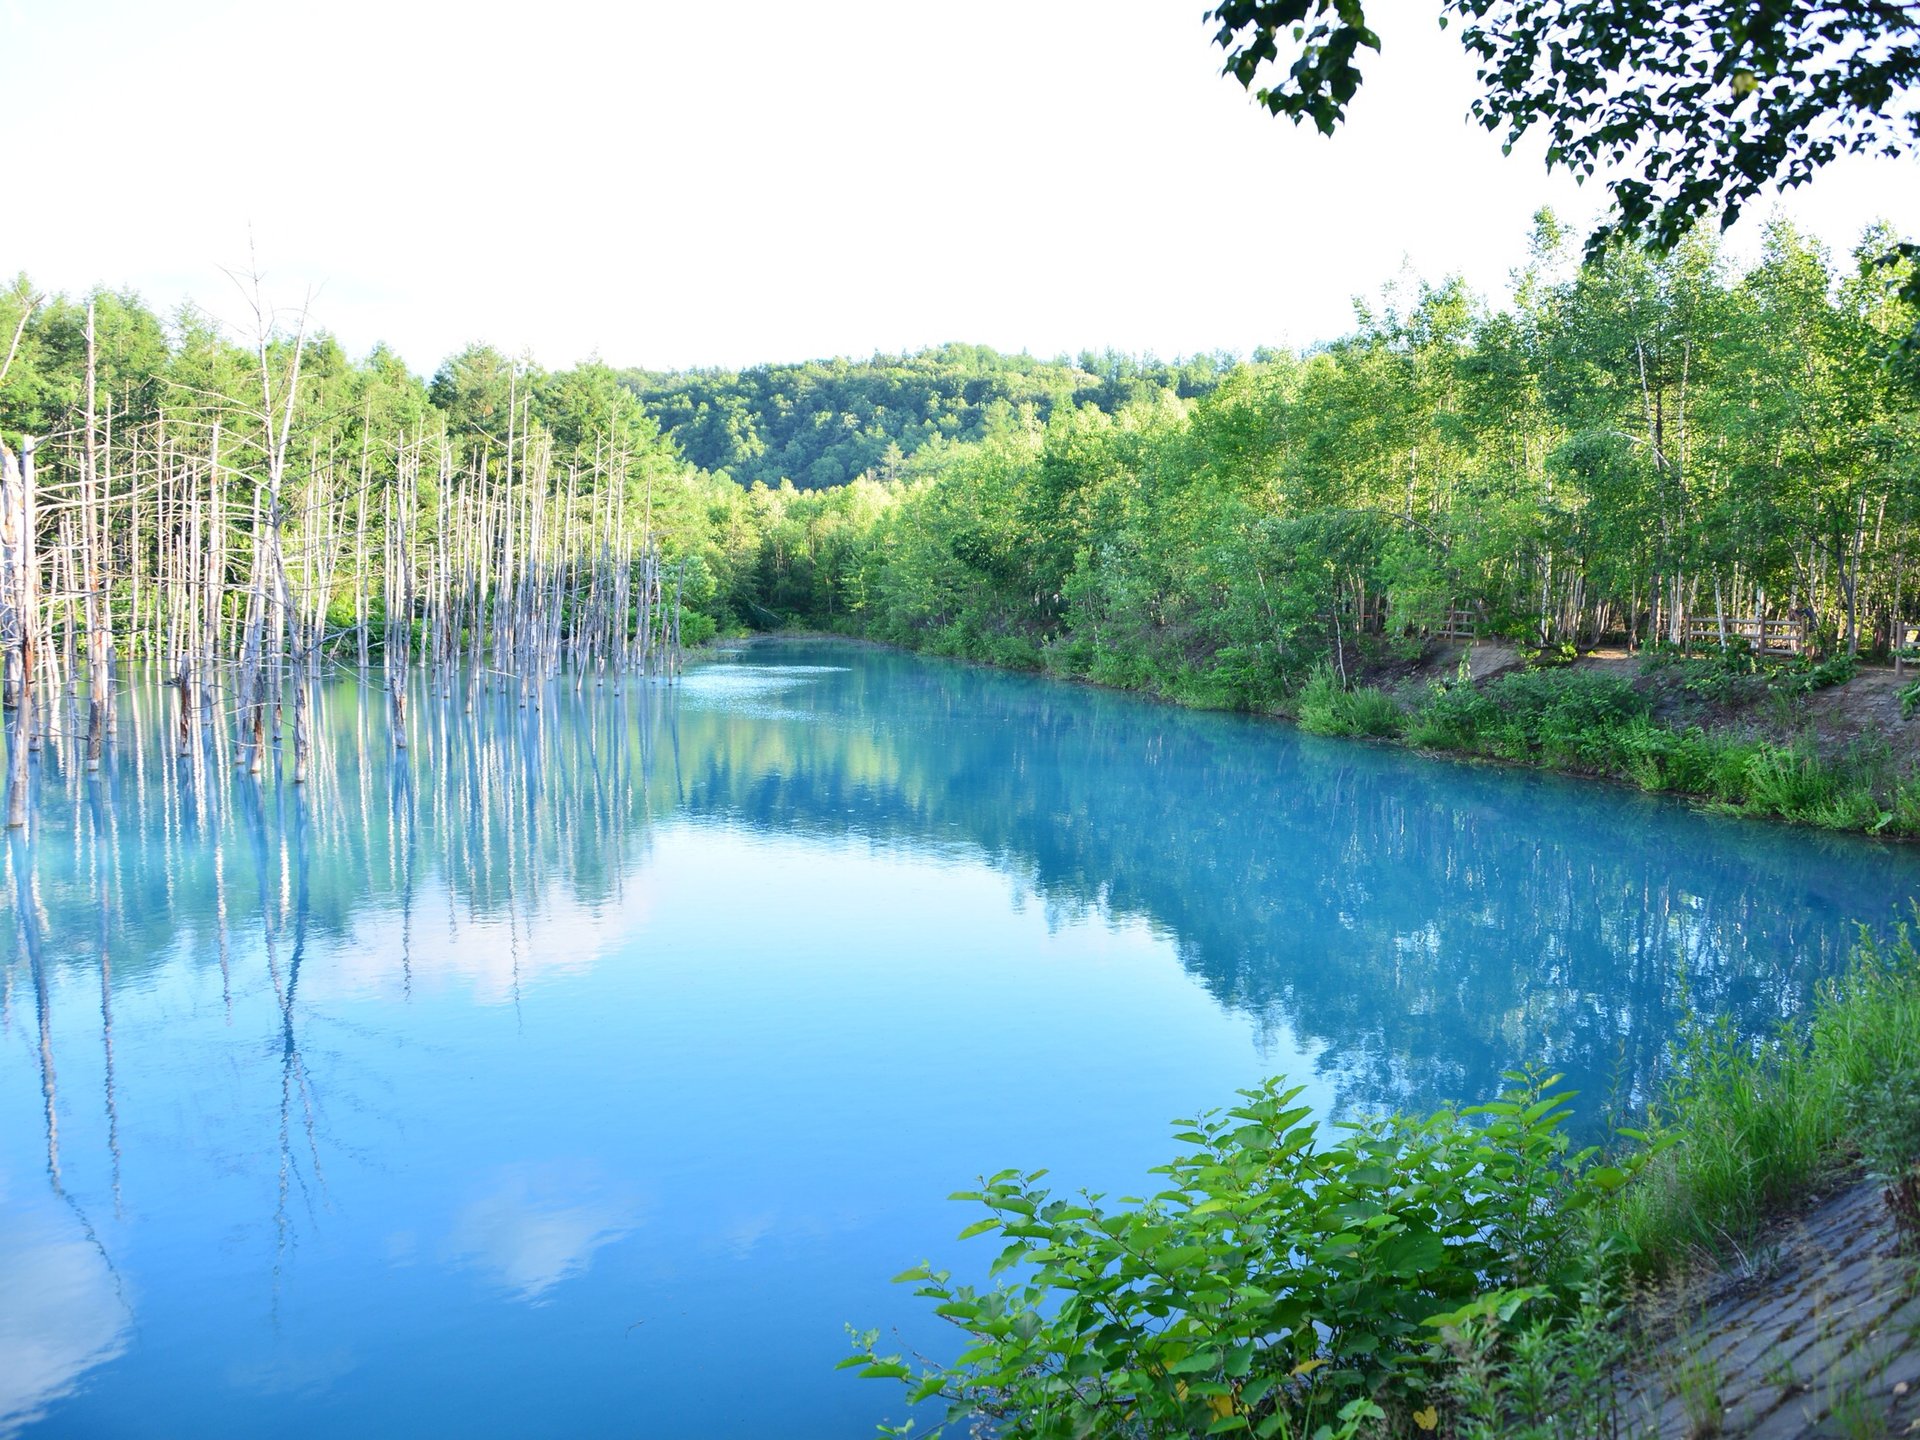 【北海道】「丘の町」美瑛町の神秘的な青い池と丘めぐり。プライスレスドライブ